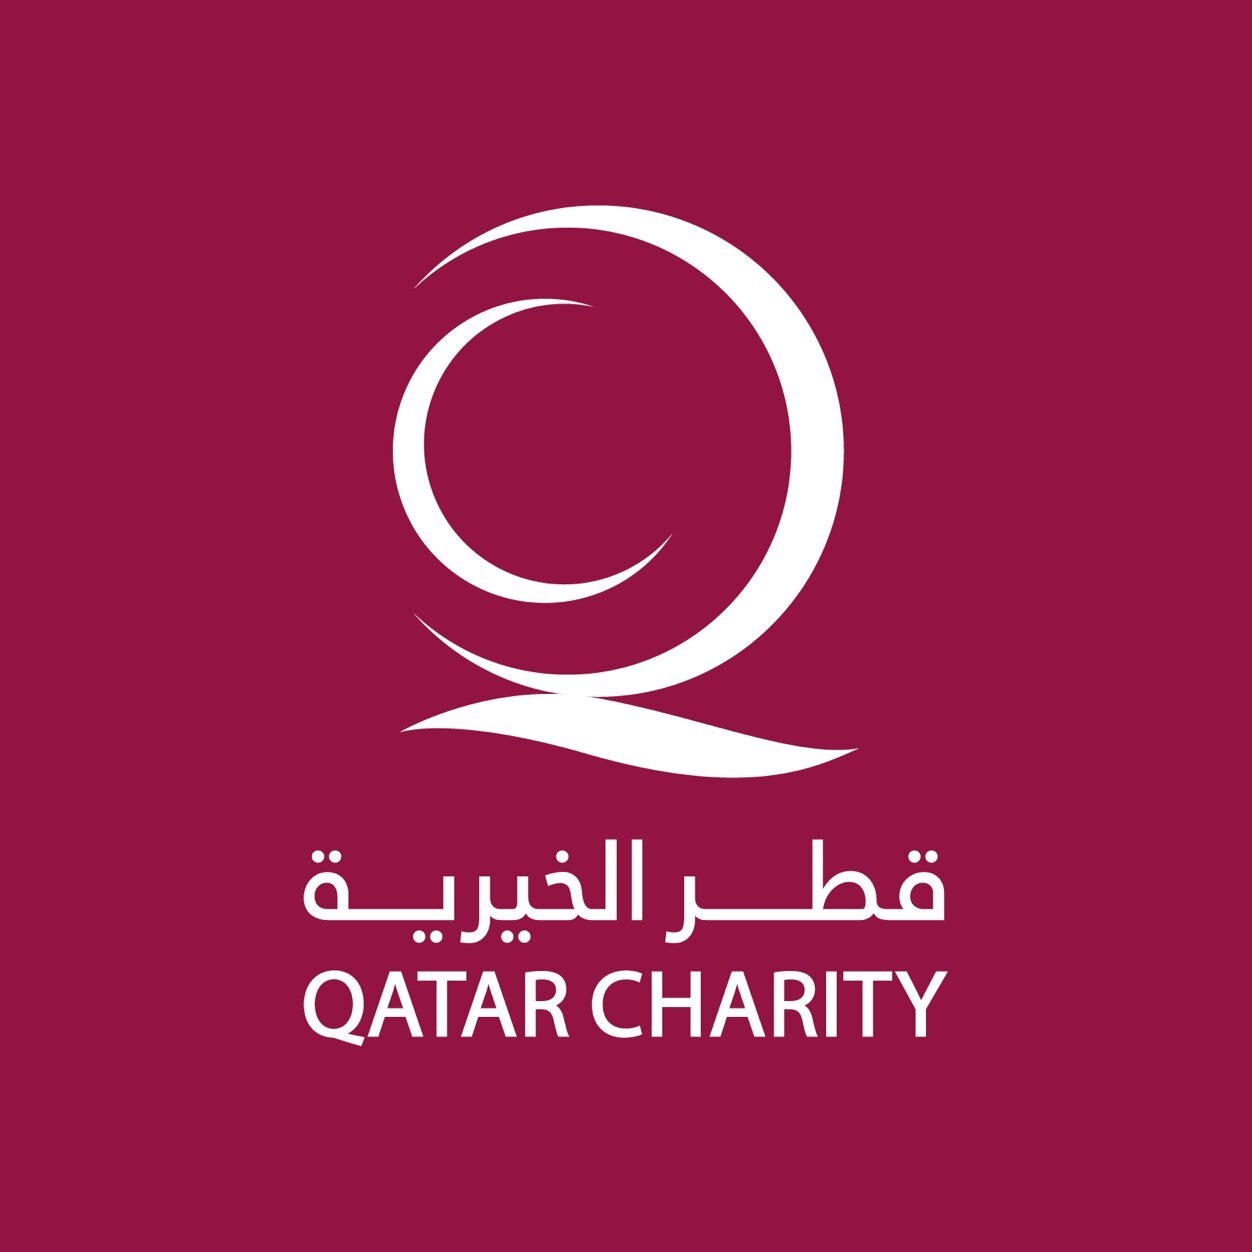 قطر الخيرية تقدم الدعم لبرنامج الأونروا للمعونة الغذائية الطارئة في غزة